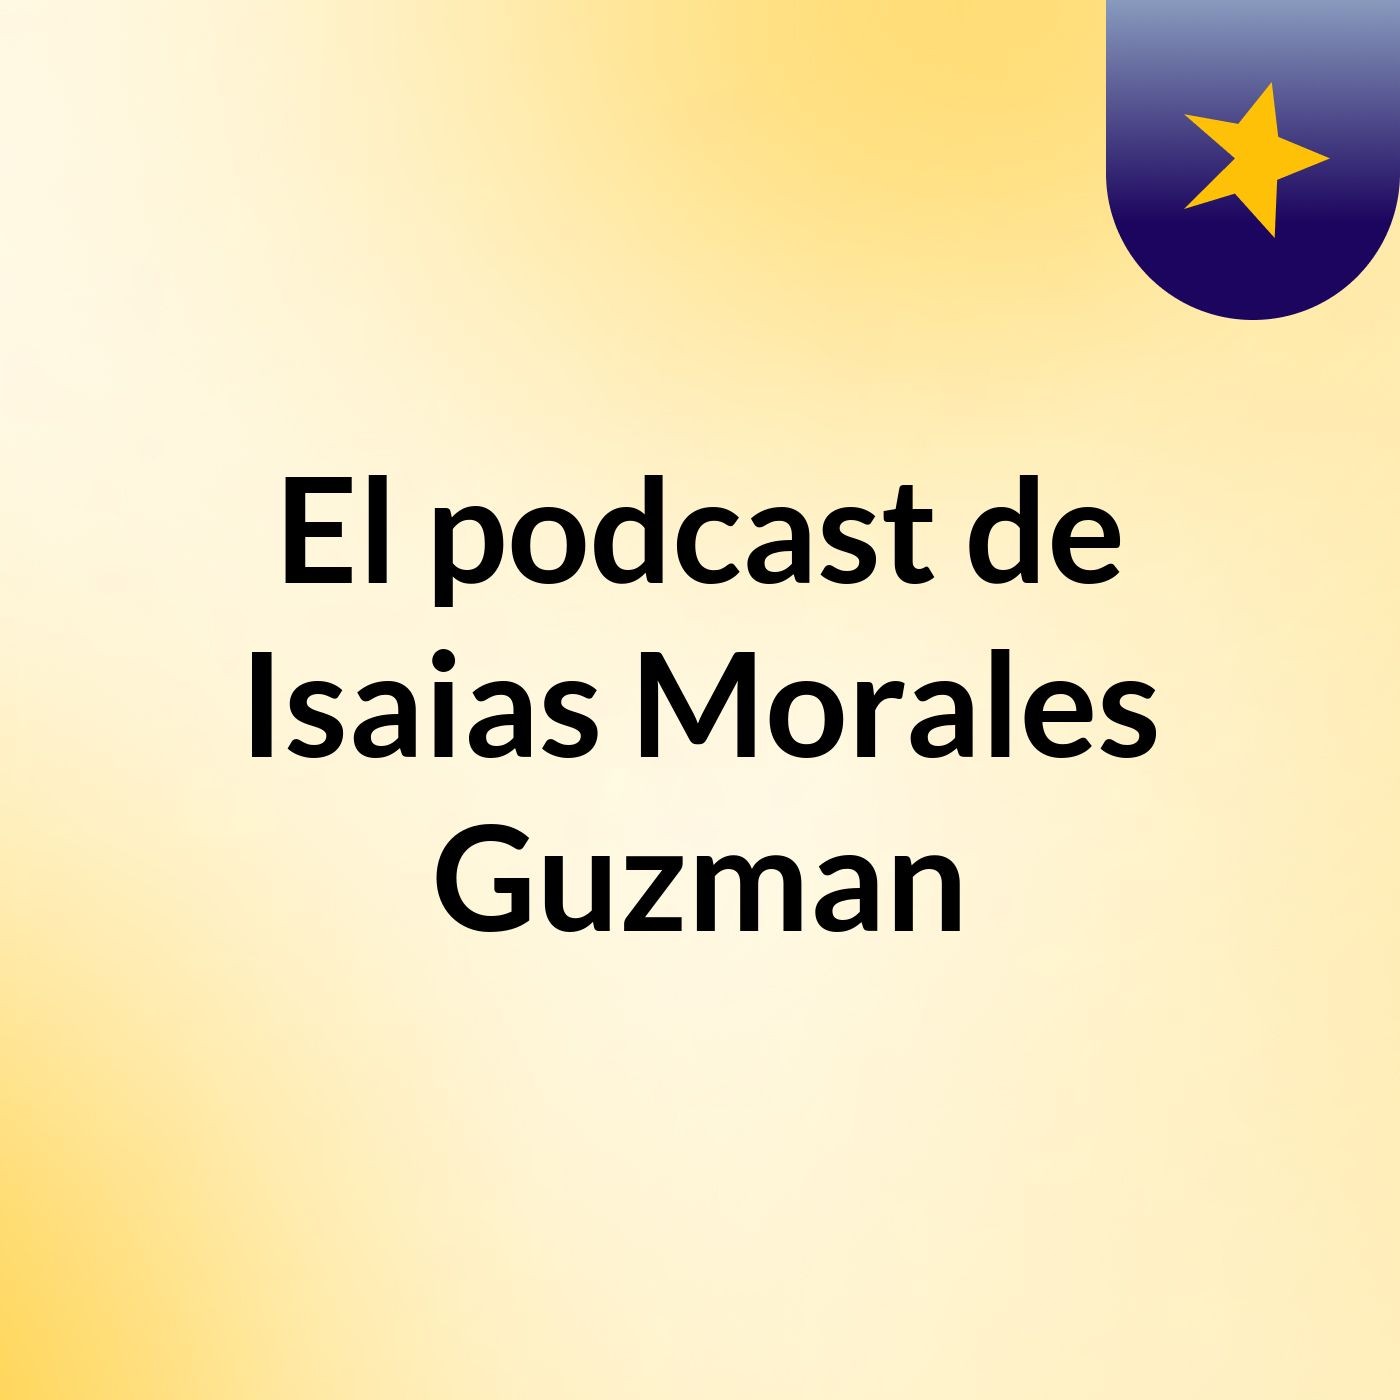 El podcast de Isaias Morales Guzman